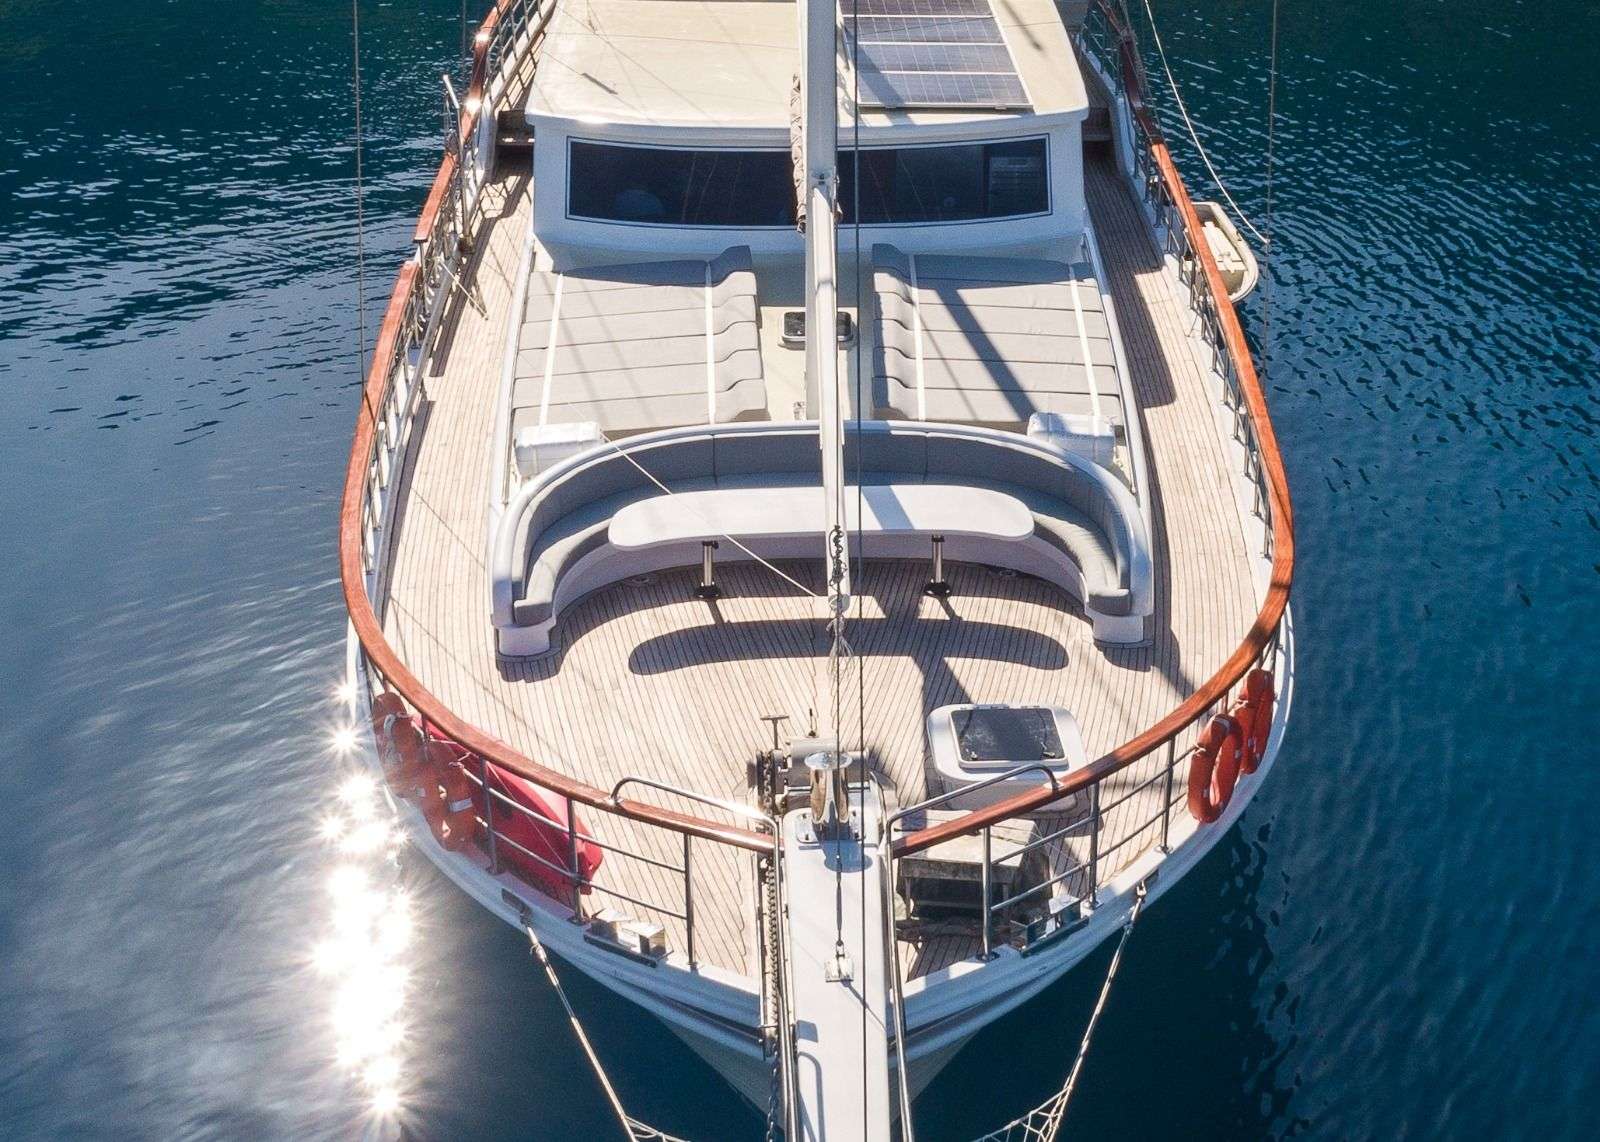 koray ege - Superyacht charter worldwide & Boat hire in Greece & Turkey 6